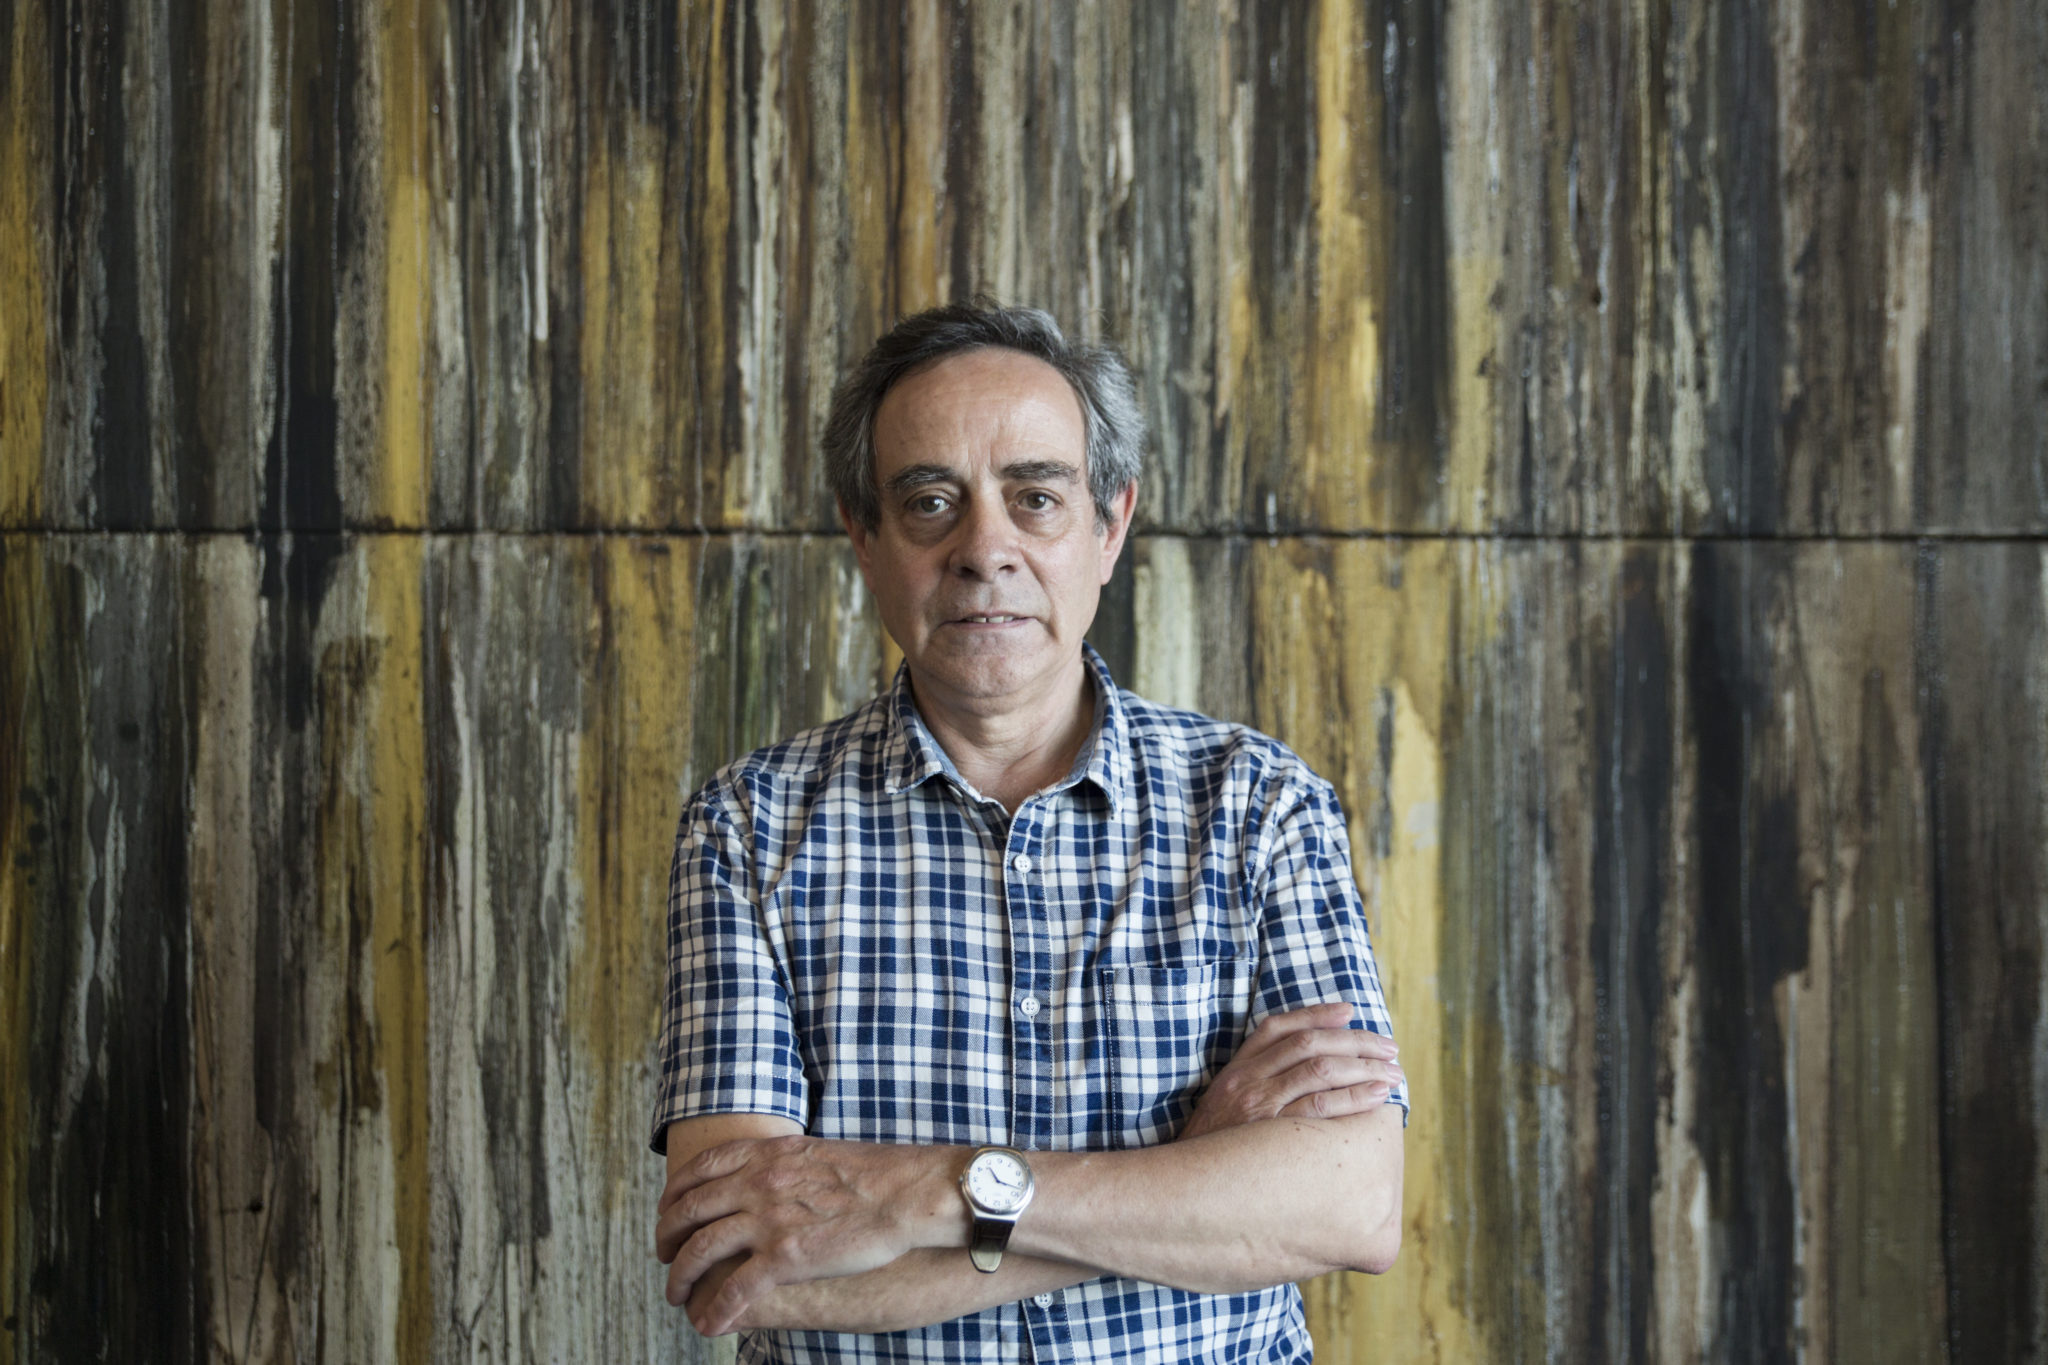 João Guedes, jornalista e investigador: “A memória perde-se muito rapidamente”